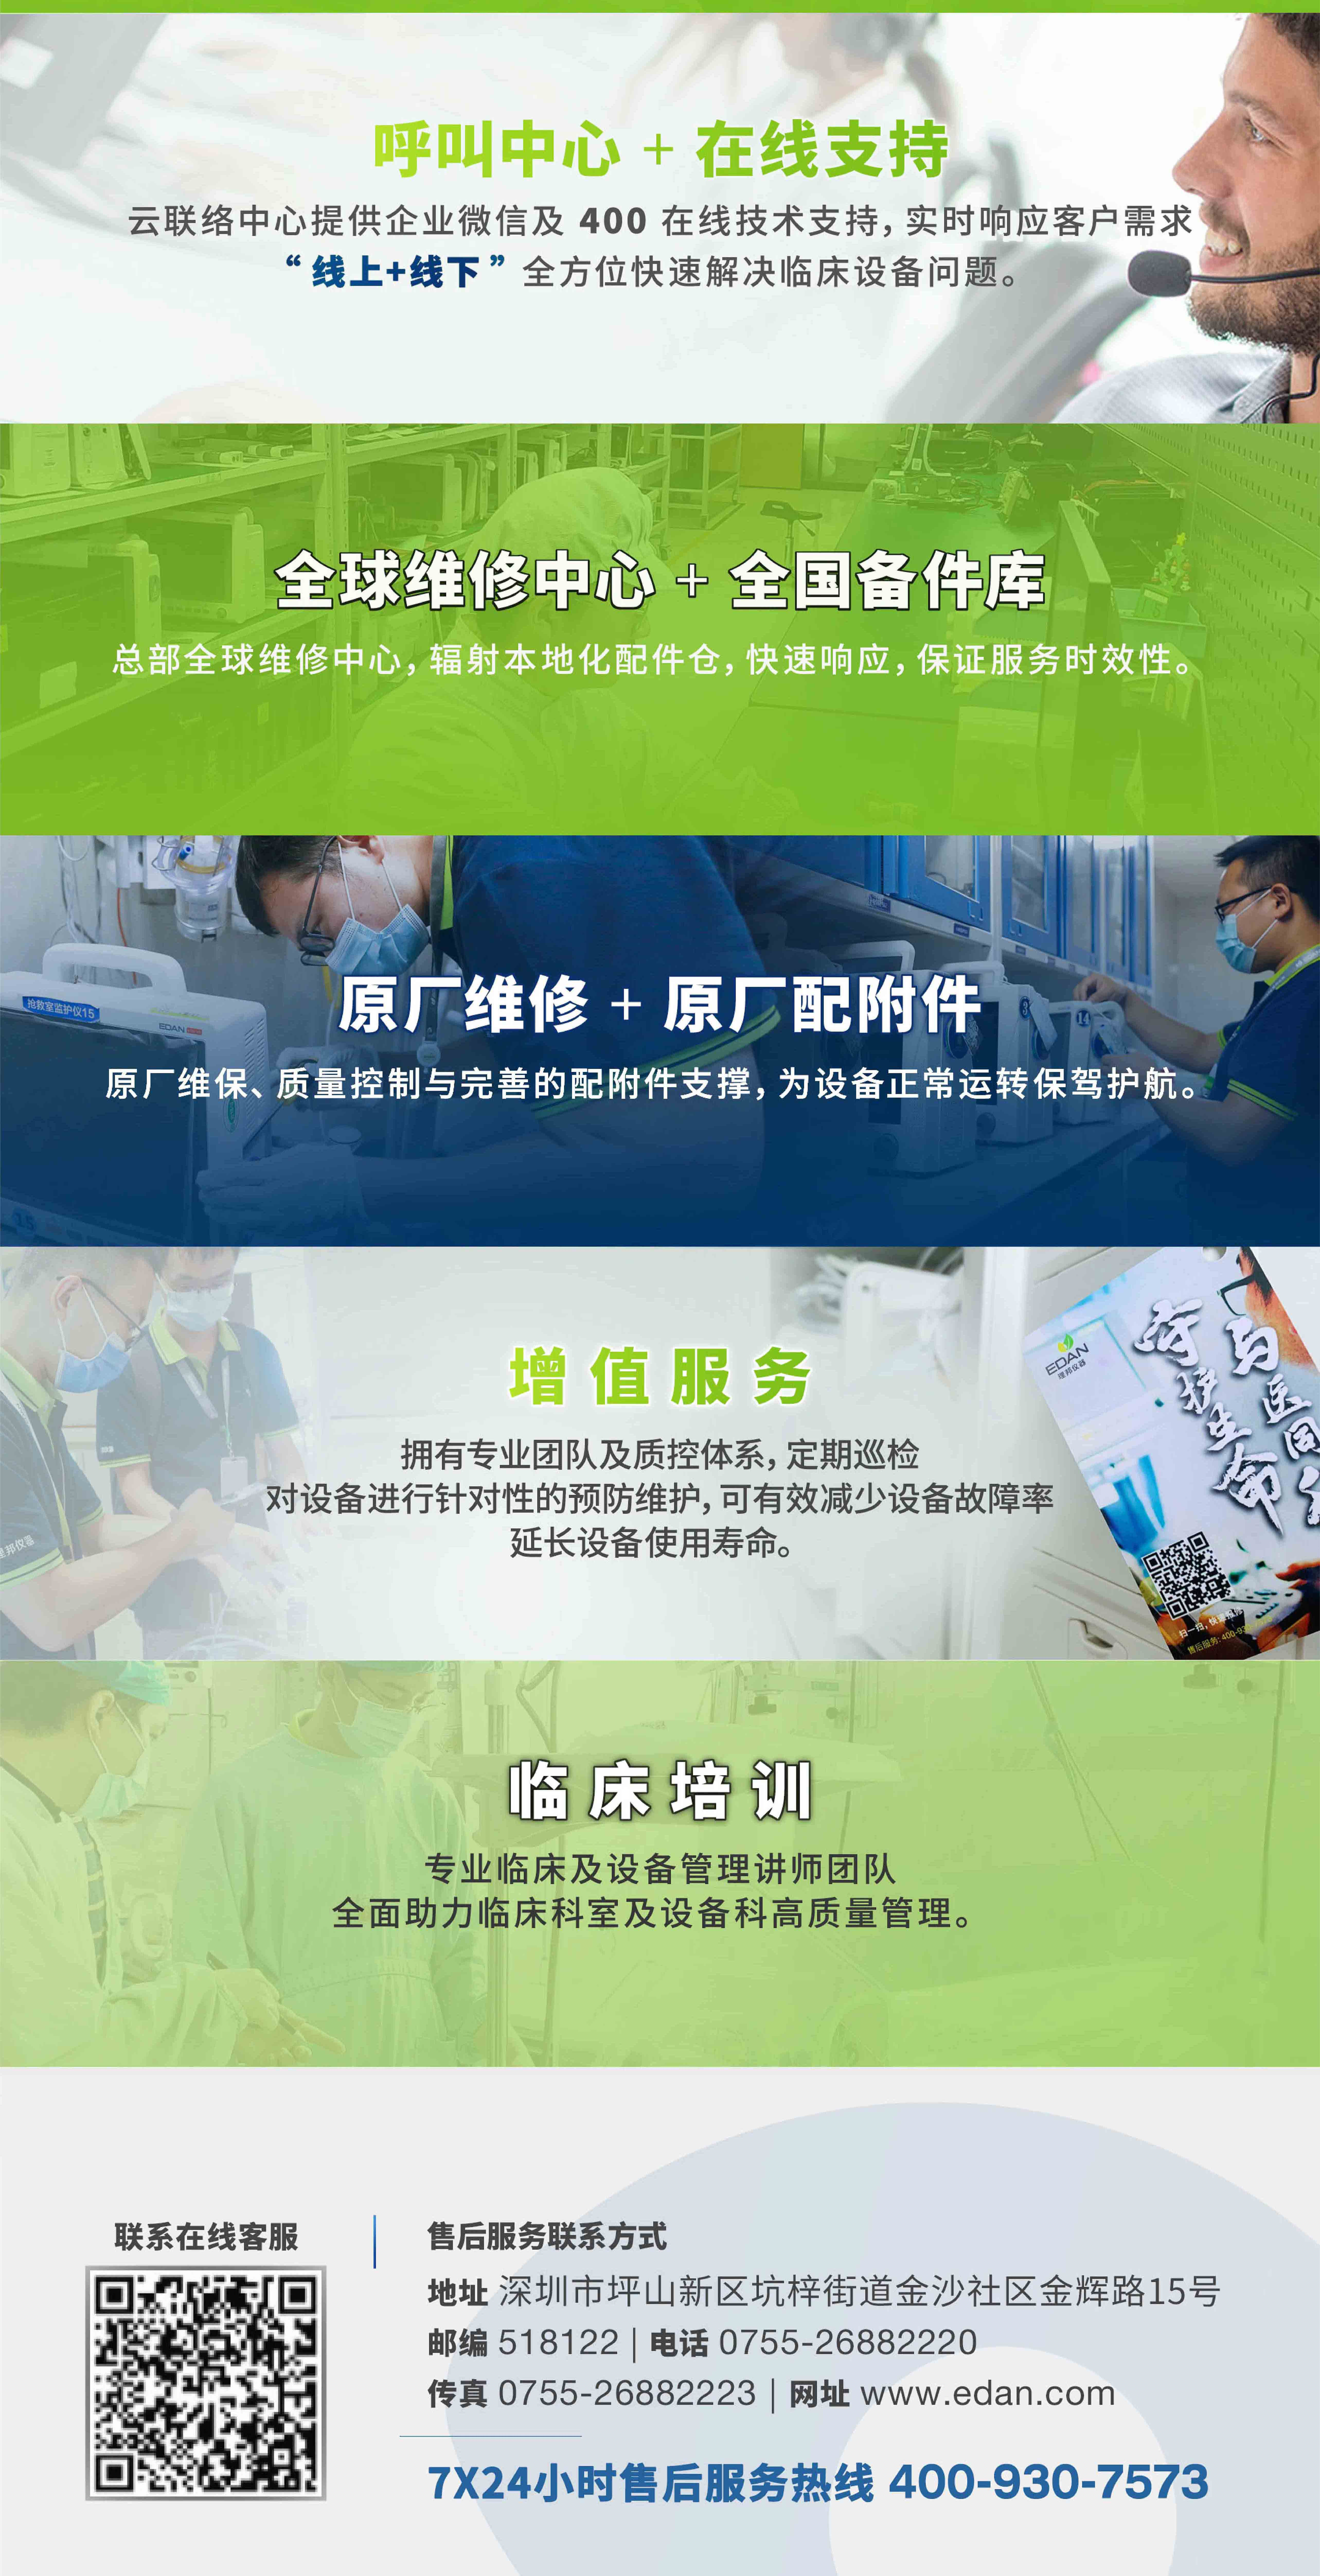 政府贴息贷款更新改造医疗设备项目-香港六宝典最新版开奖客户服务解决方案_01-2.jpg